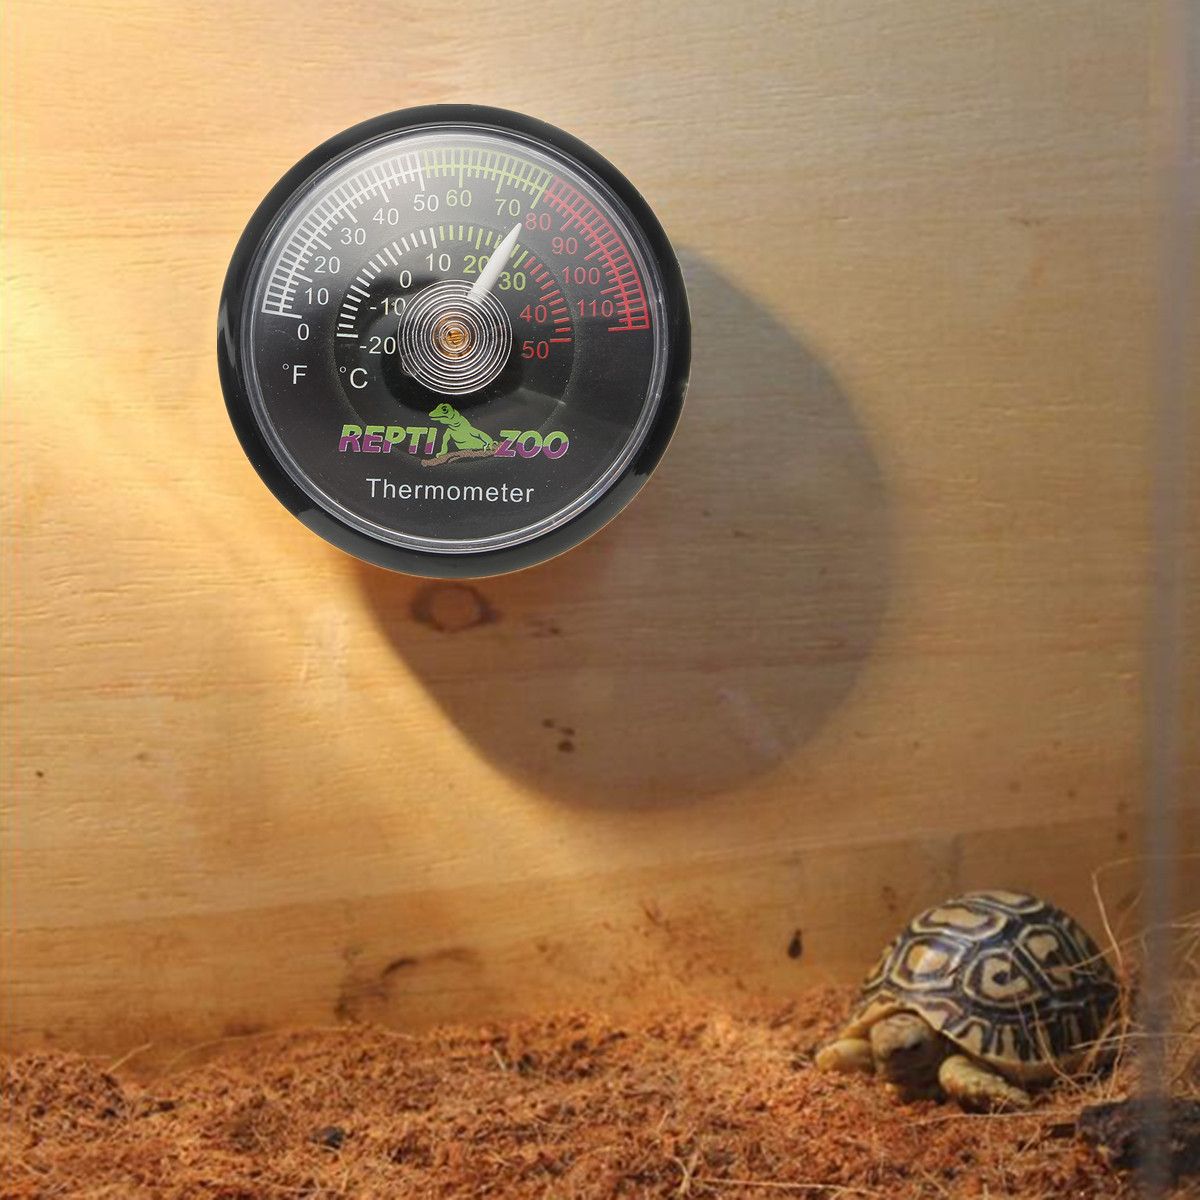 Reptile-Tortoise-Vivarium-Terrarium-Temperature-Meter-Thermometer-with-Colour-Codes-1263986